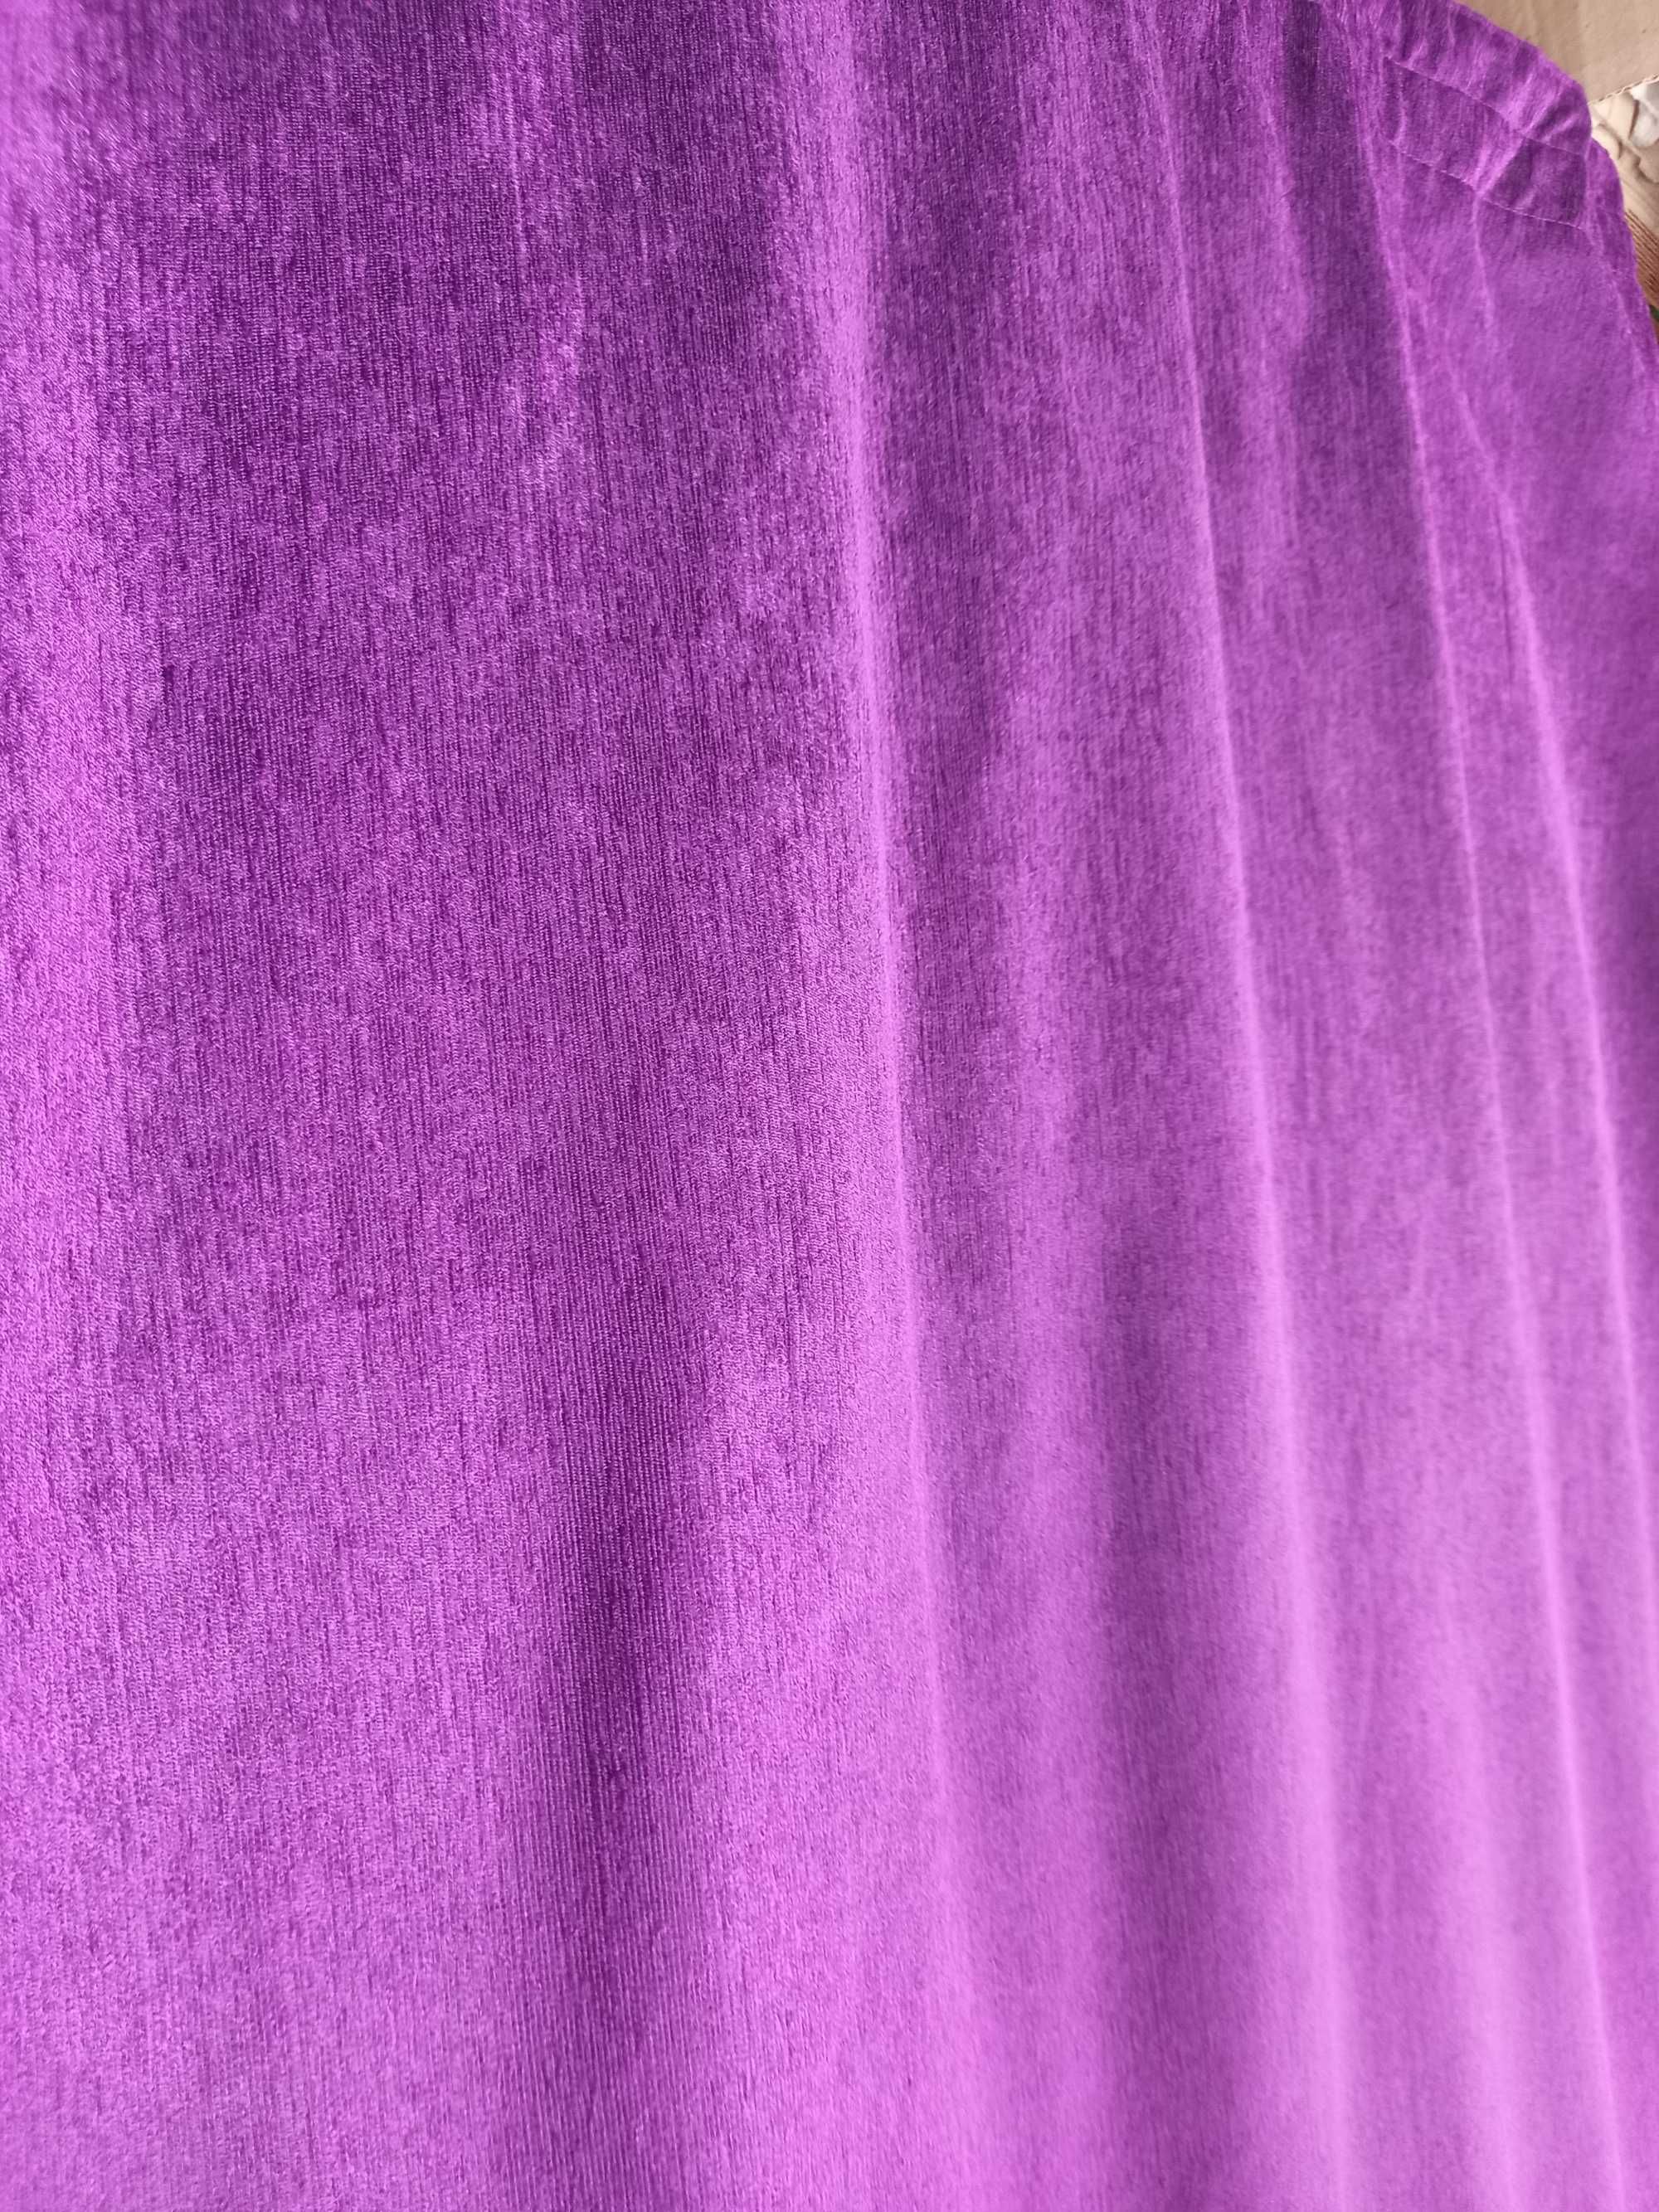 Шторы готовые и тюль фиолетового цвета